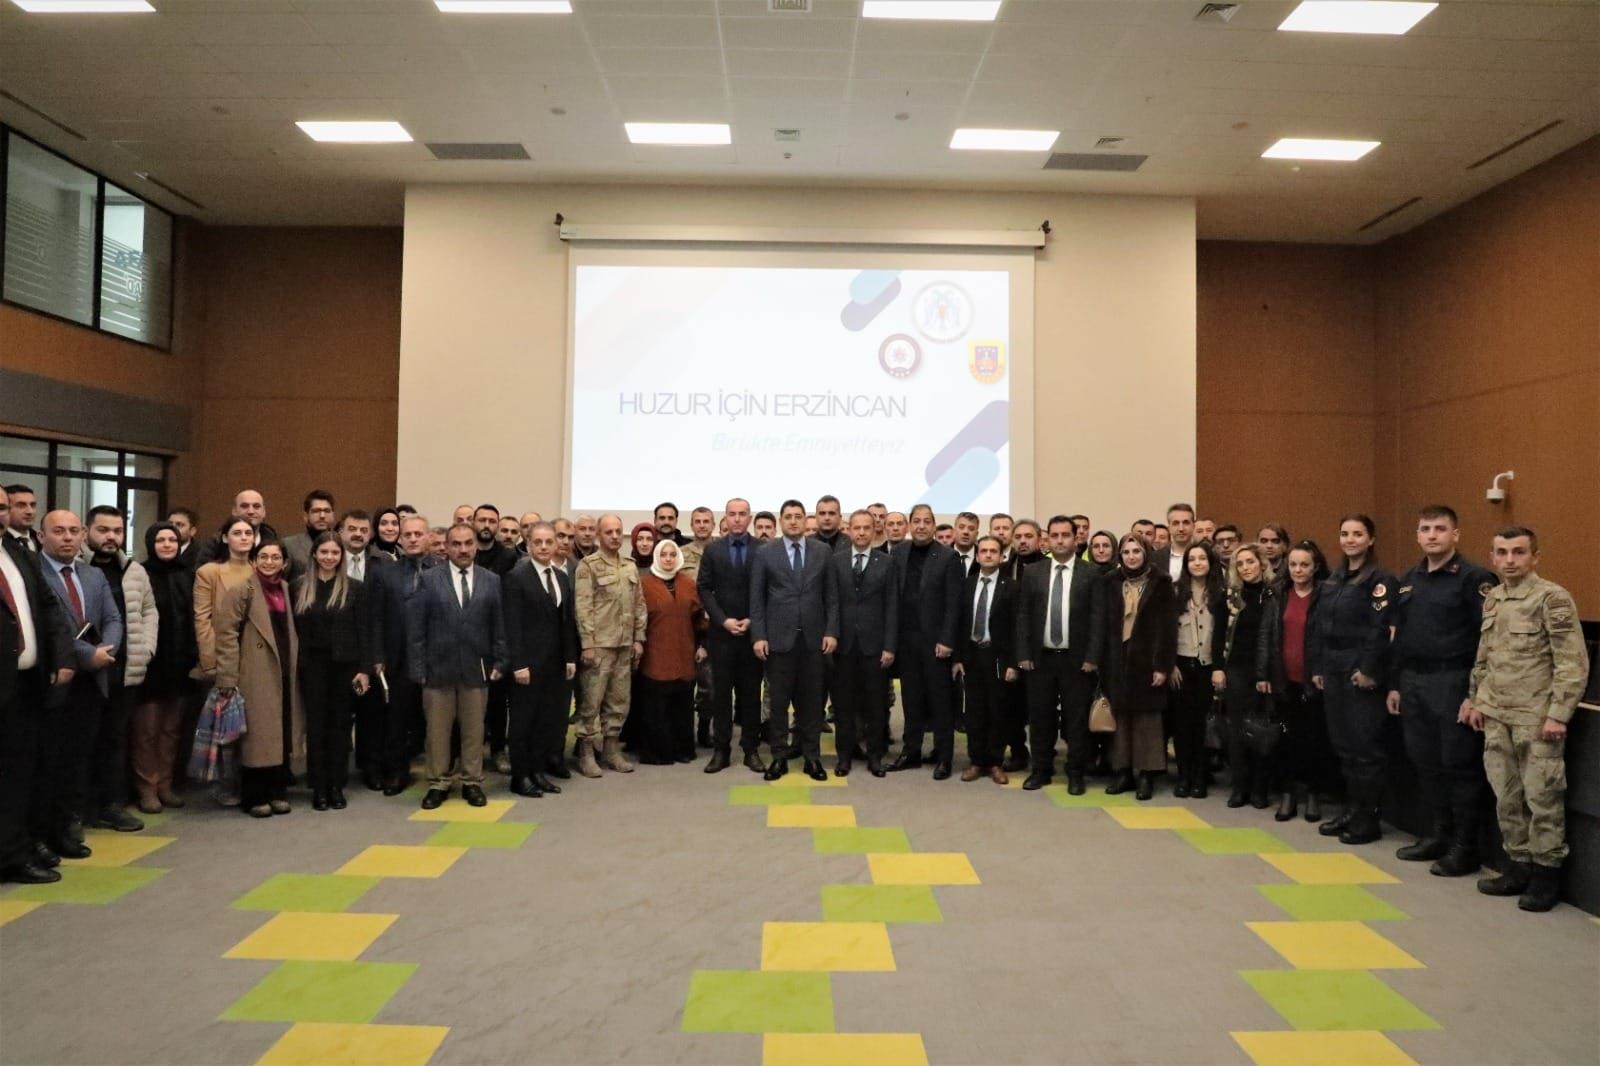 ‘Huzur İçin Erzincan’ projesinin üçüncü toplantısı düzenlendi